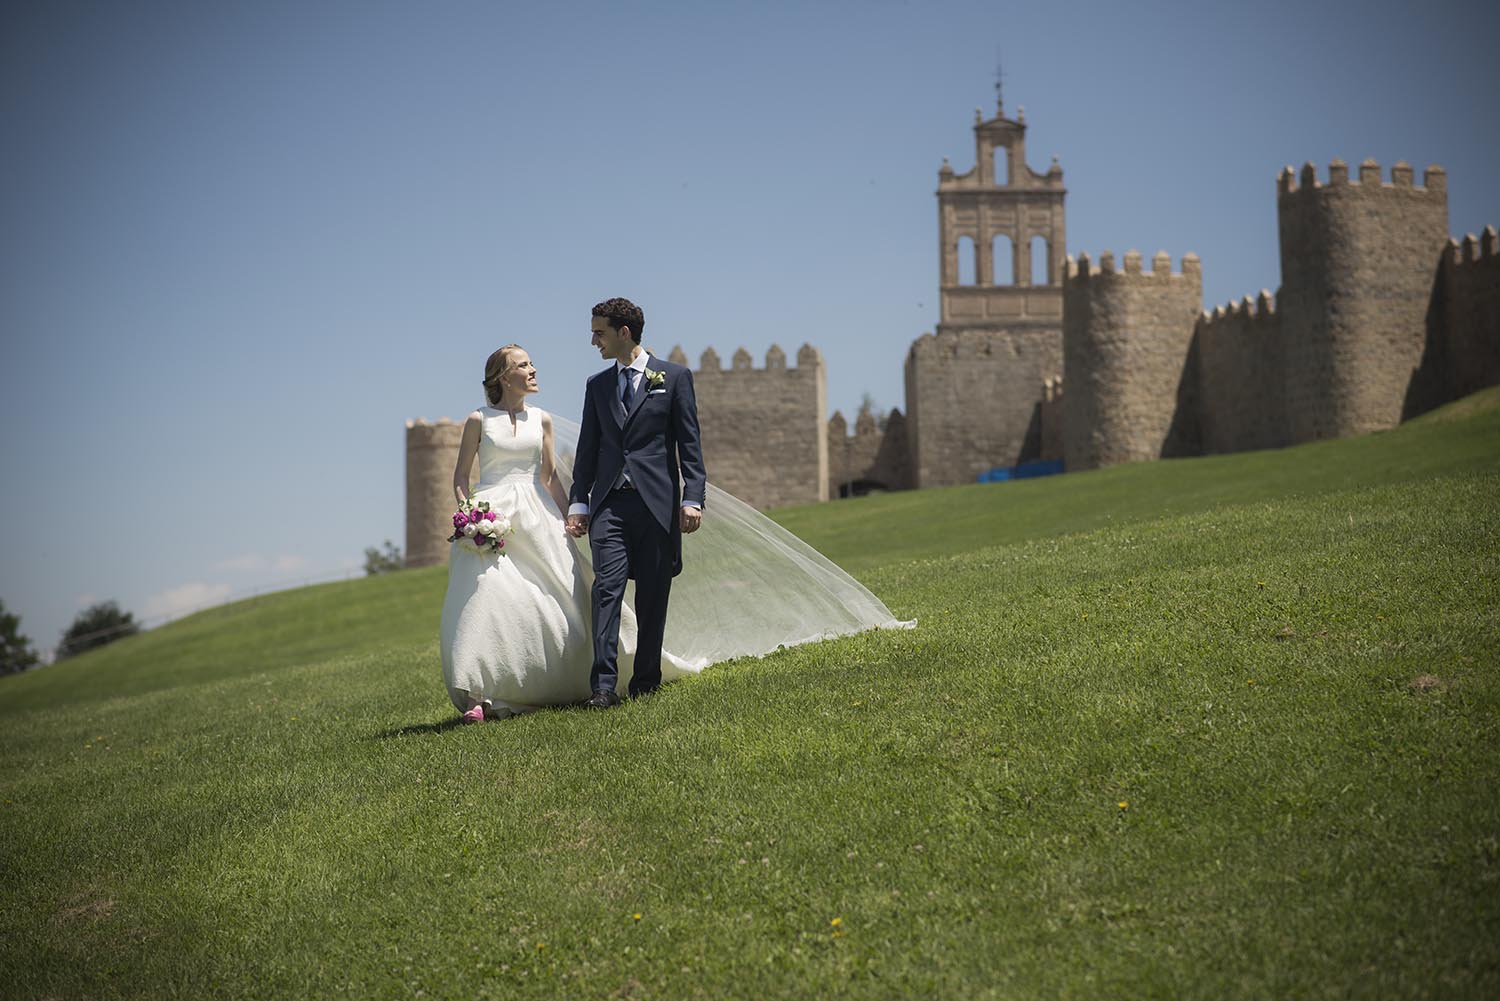 Descubre la emotiva historia de la boda de Alfonso y Marisa en Ávila, desde los preparativos hasta la celebración en la hermosa ciudad amurallada. Conoce cómo capturamos cada momento especial con nuestras fotografías, vídeos y el divertido fotomatón.